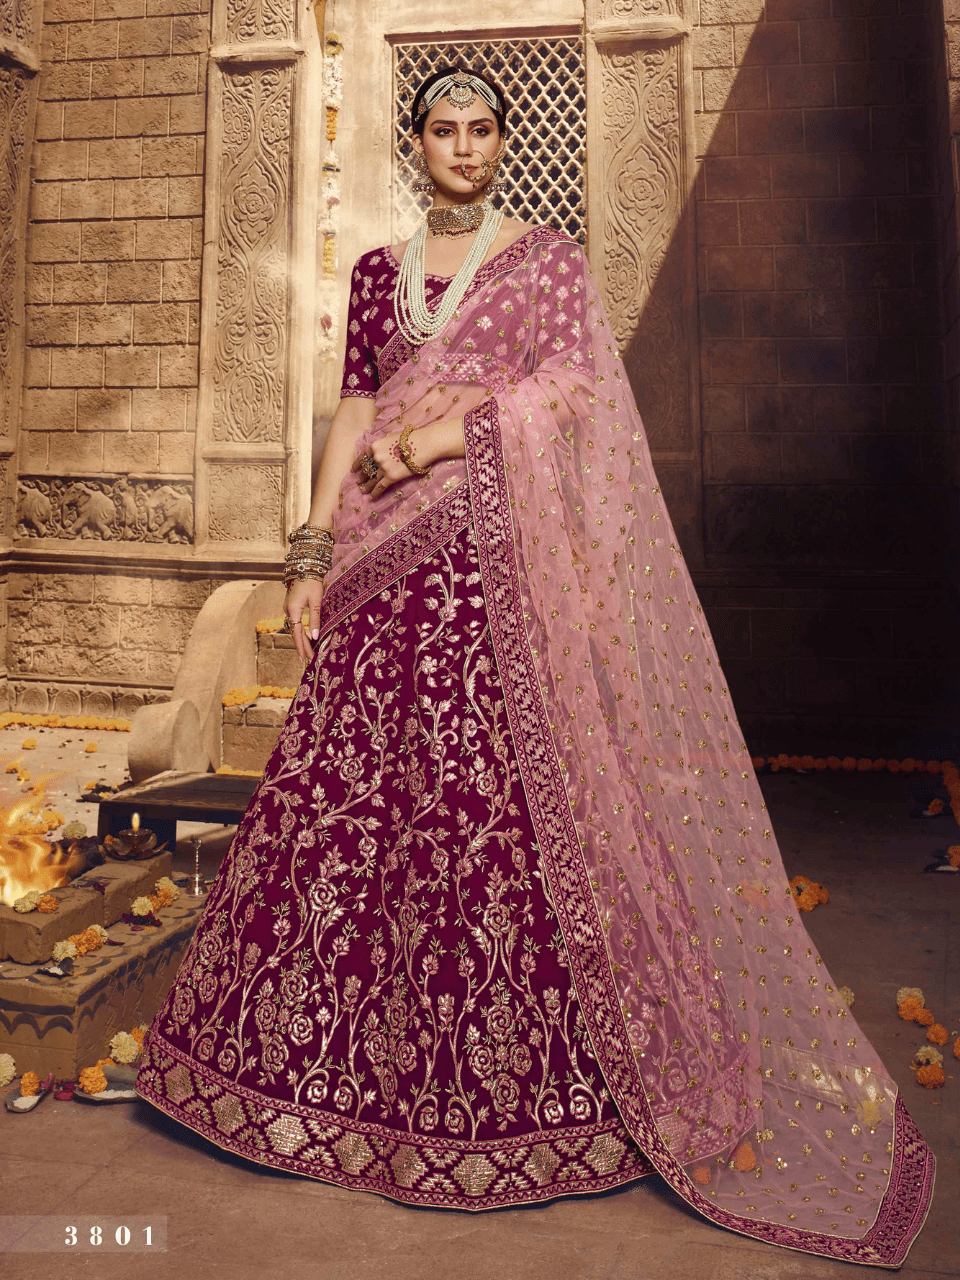 Lehenga Heavy Bridal Indian Bollywood Wedding Ethnic Embroidered Lehnga  Choli | eBay